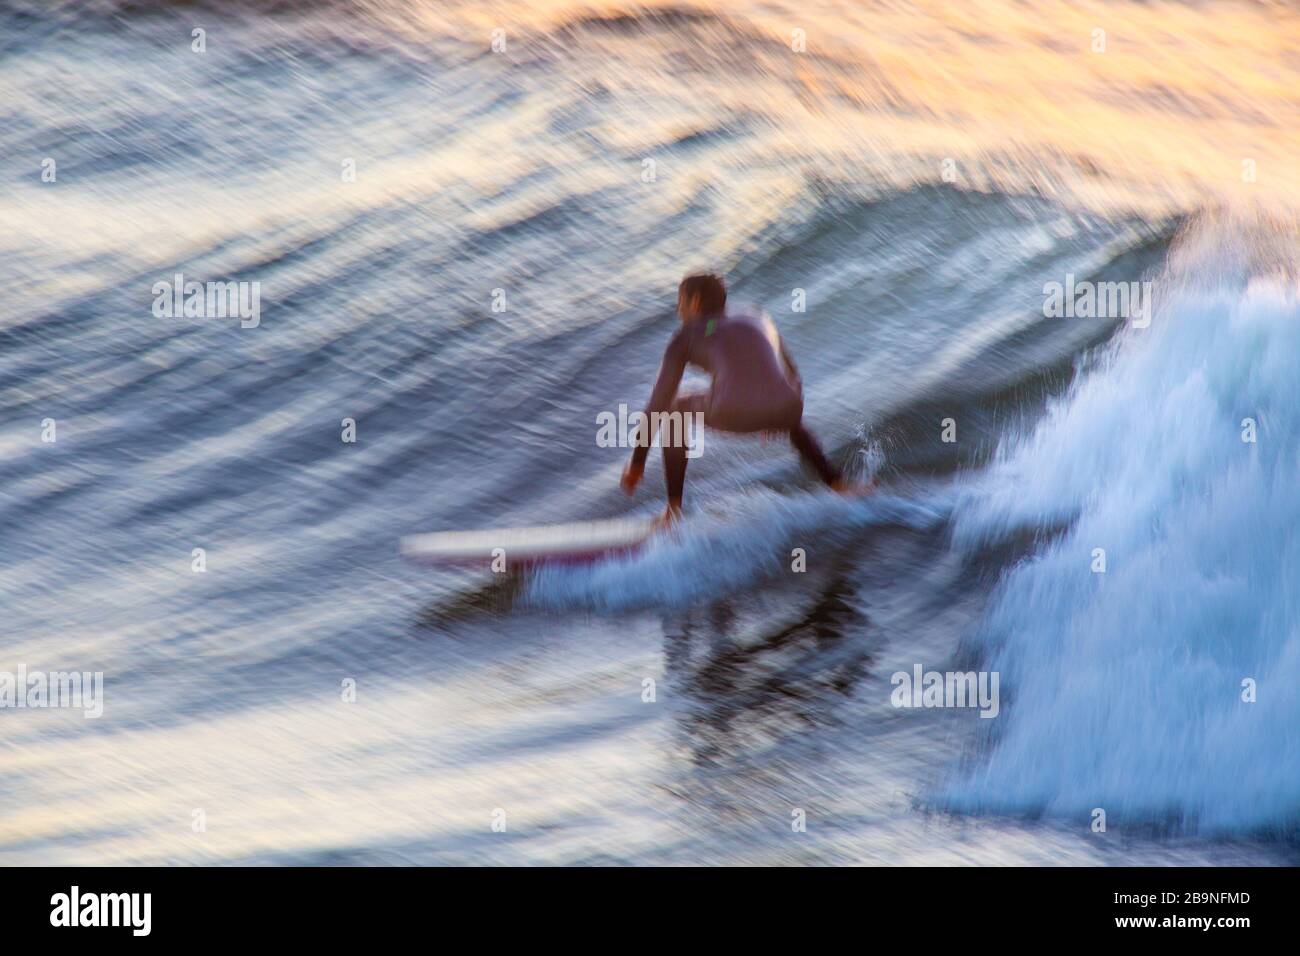 Immagine di motion blur del surf a Leadbetter Point all'alba, Santa Barbara, California Foto Stock